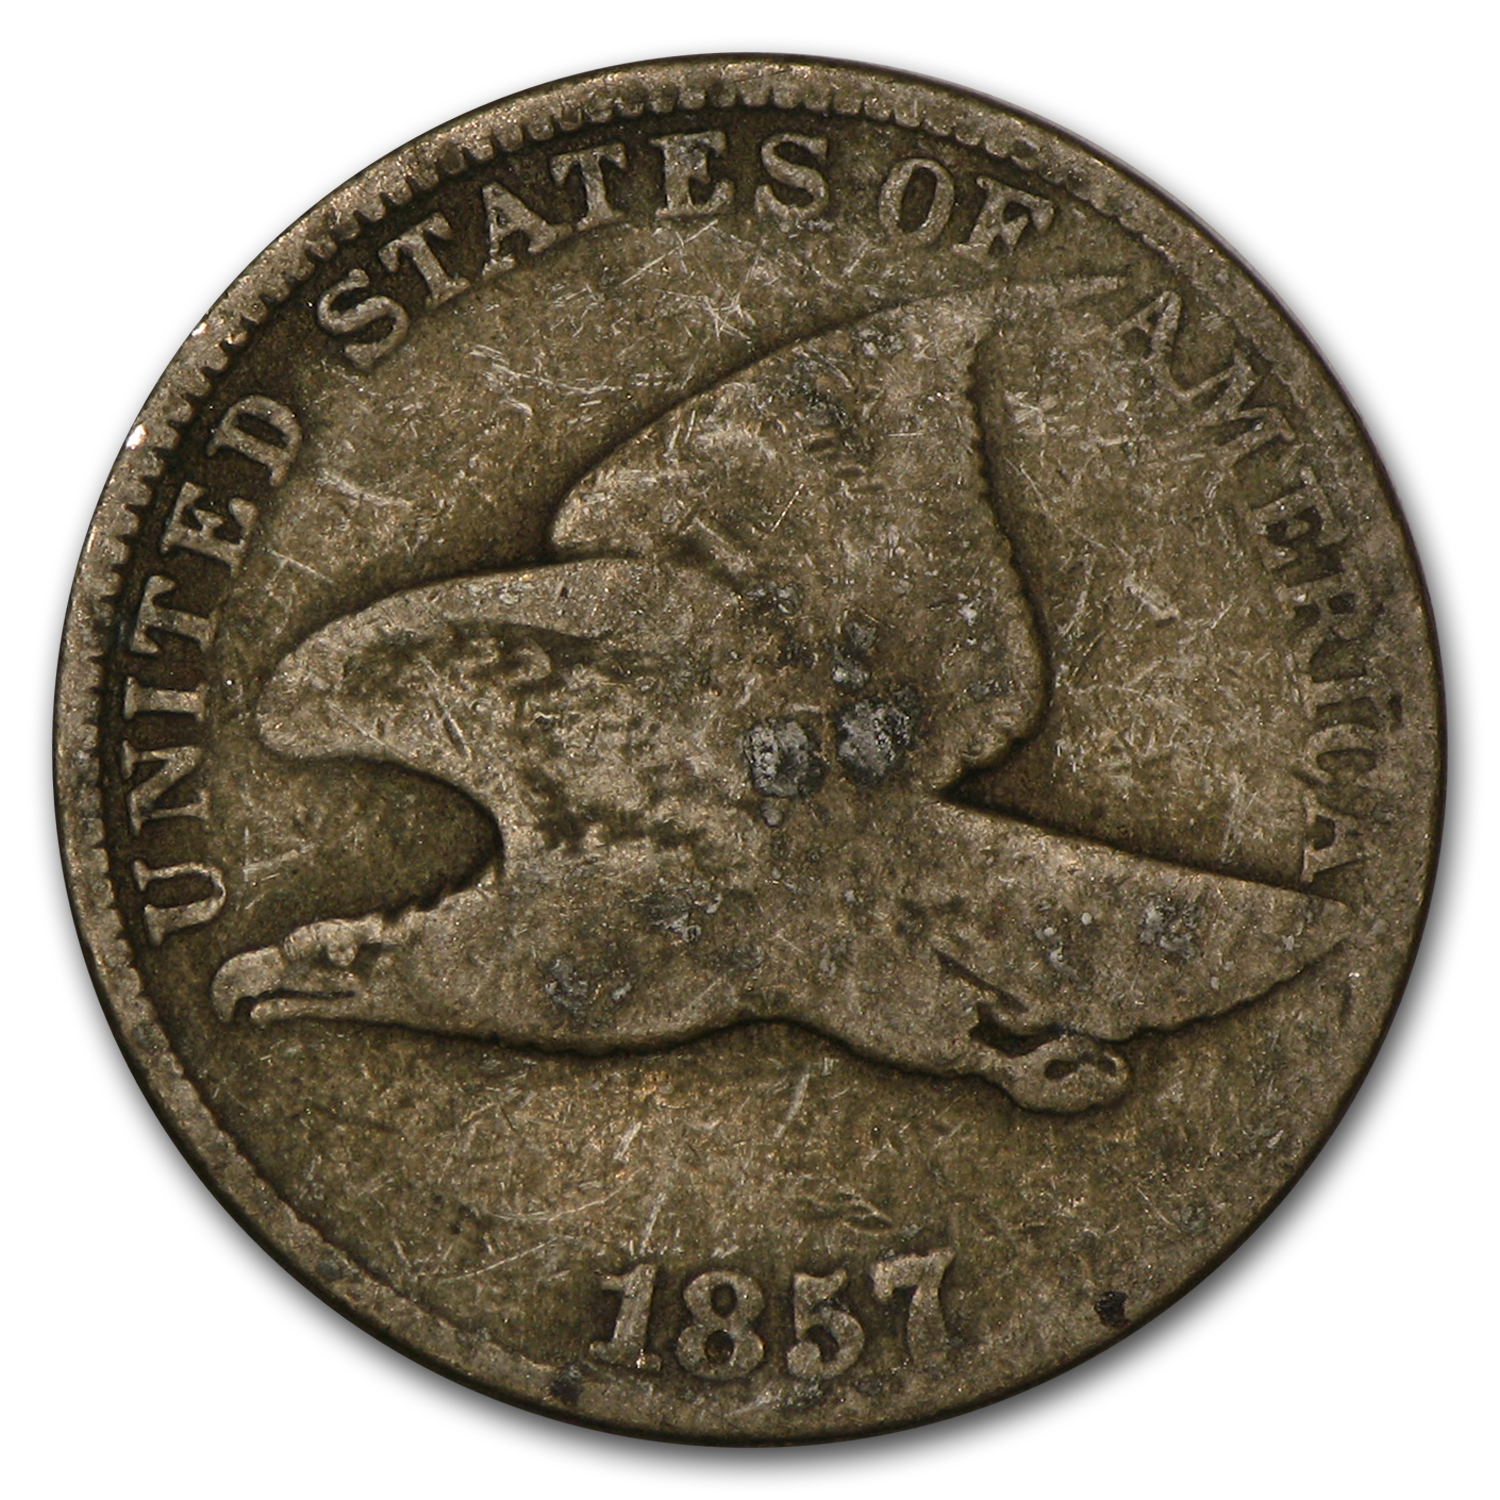 Buy 1857 Flying Eagle Cent VG